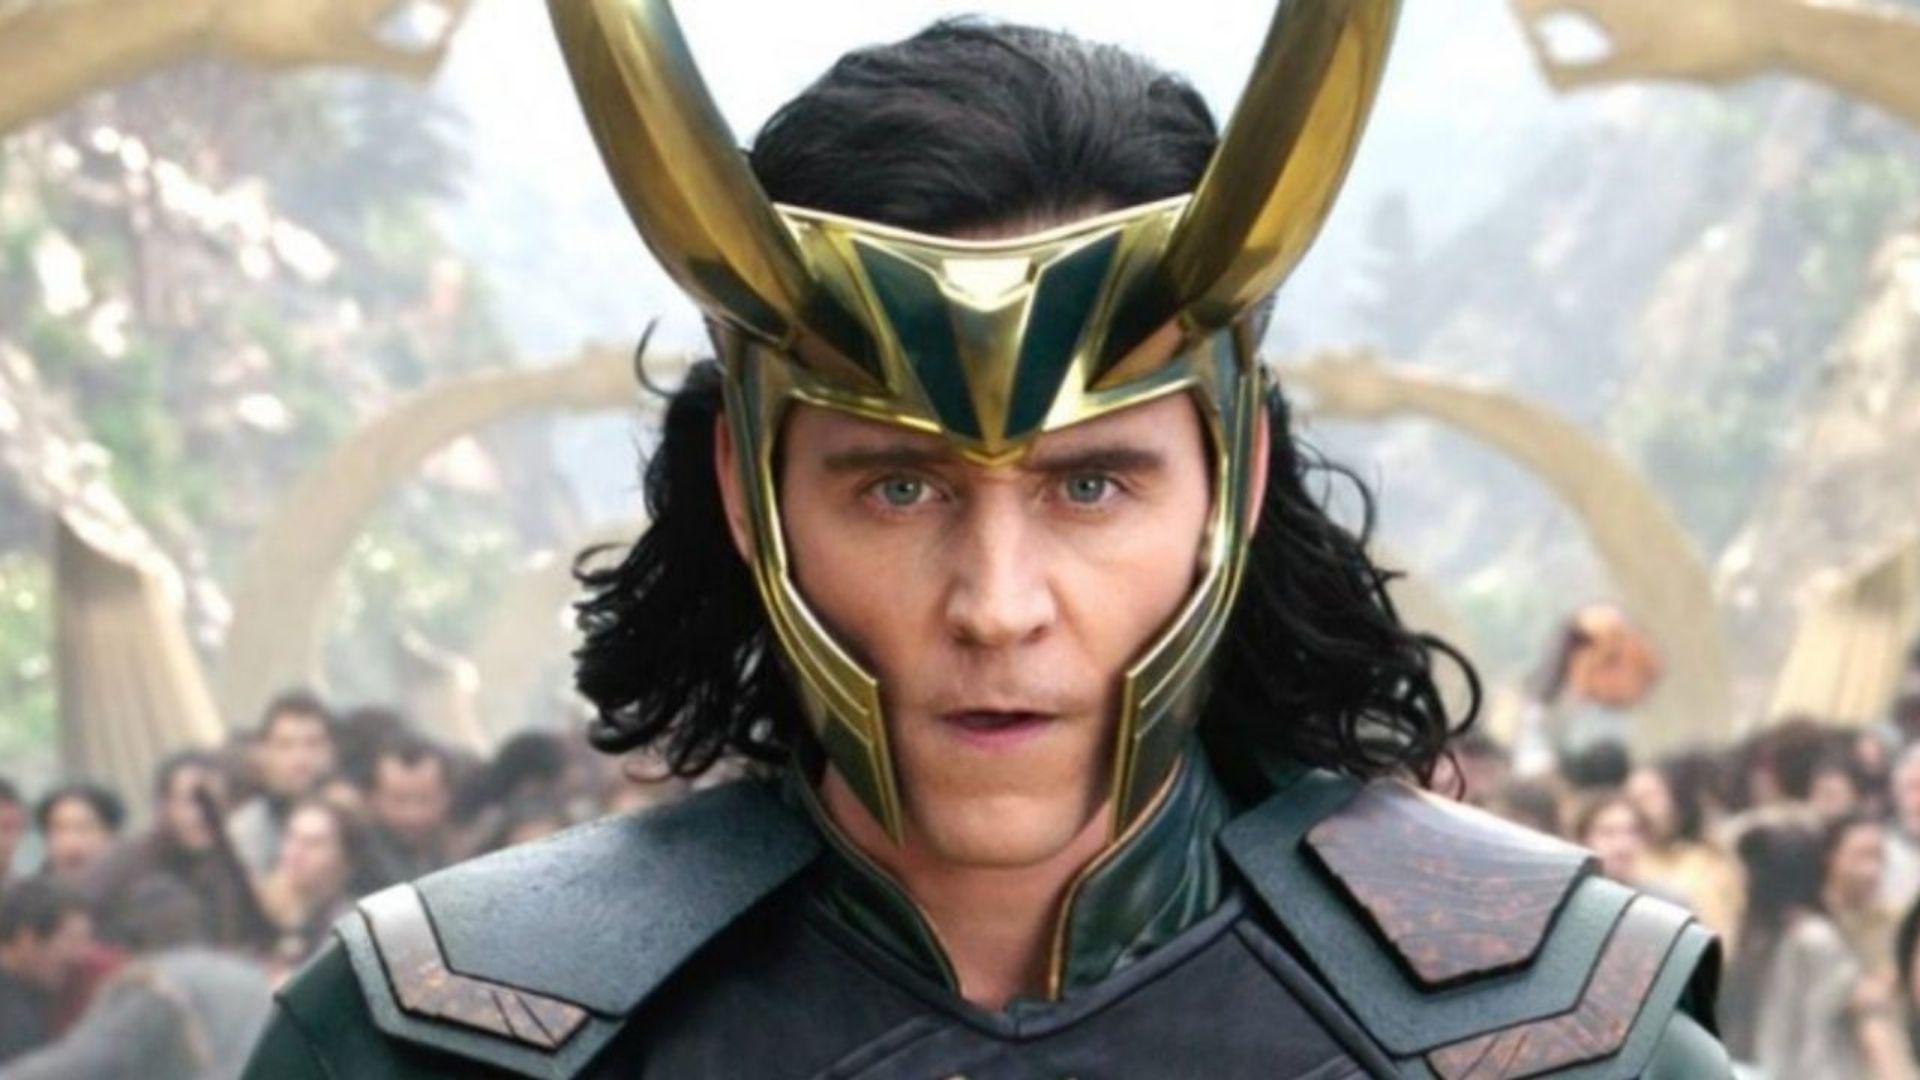 TÁ CHEGANDO! O Disney+ antecipou a estreia da 2a temporada de Loki